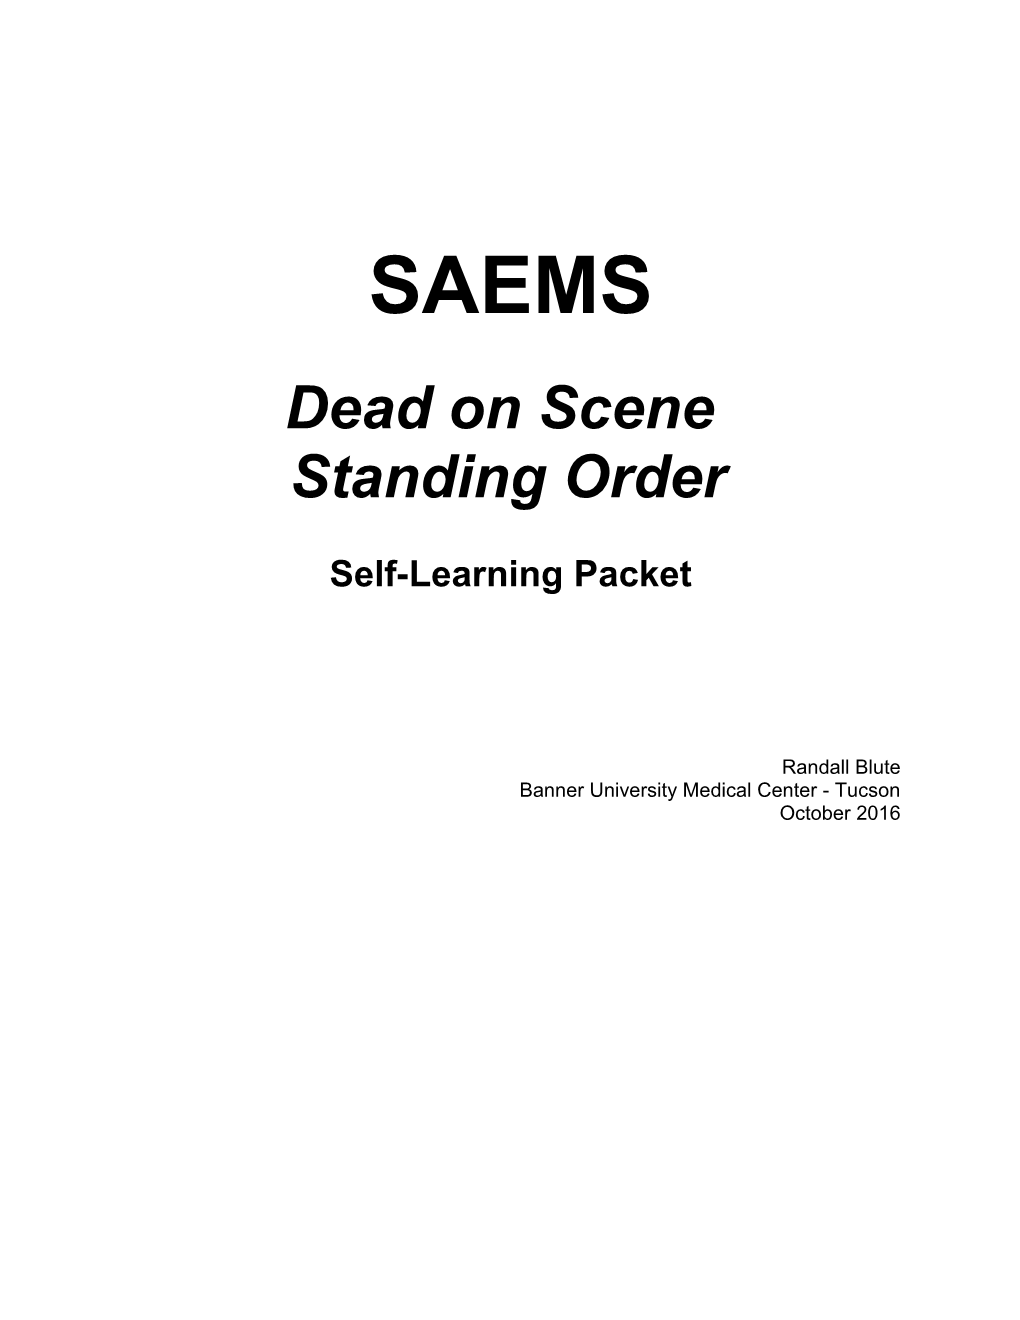 SAEMS Dead on Scene Standing Order Training Module